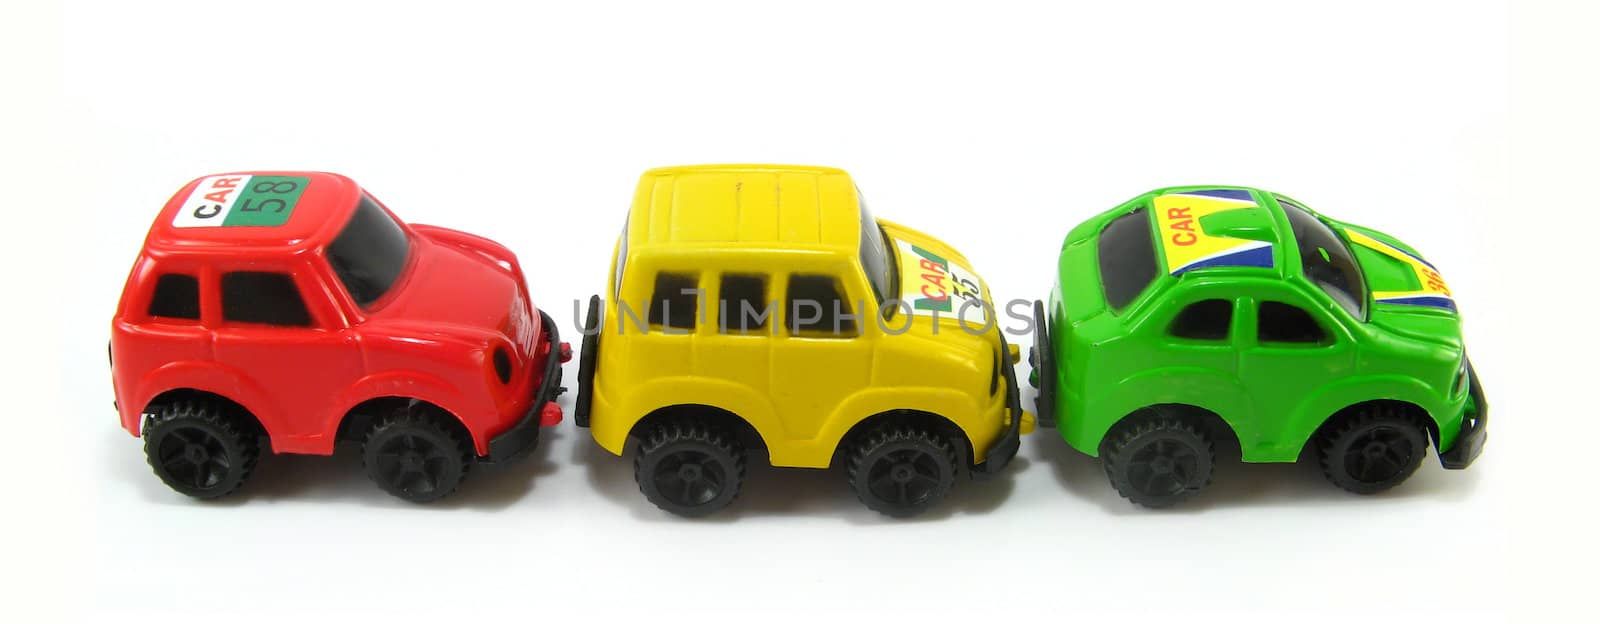 rally toycars by jbouzou